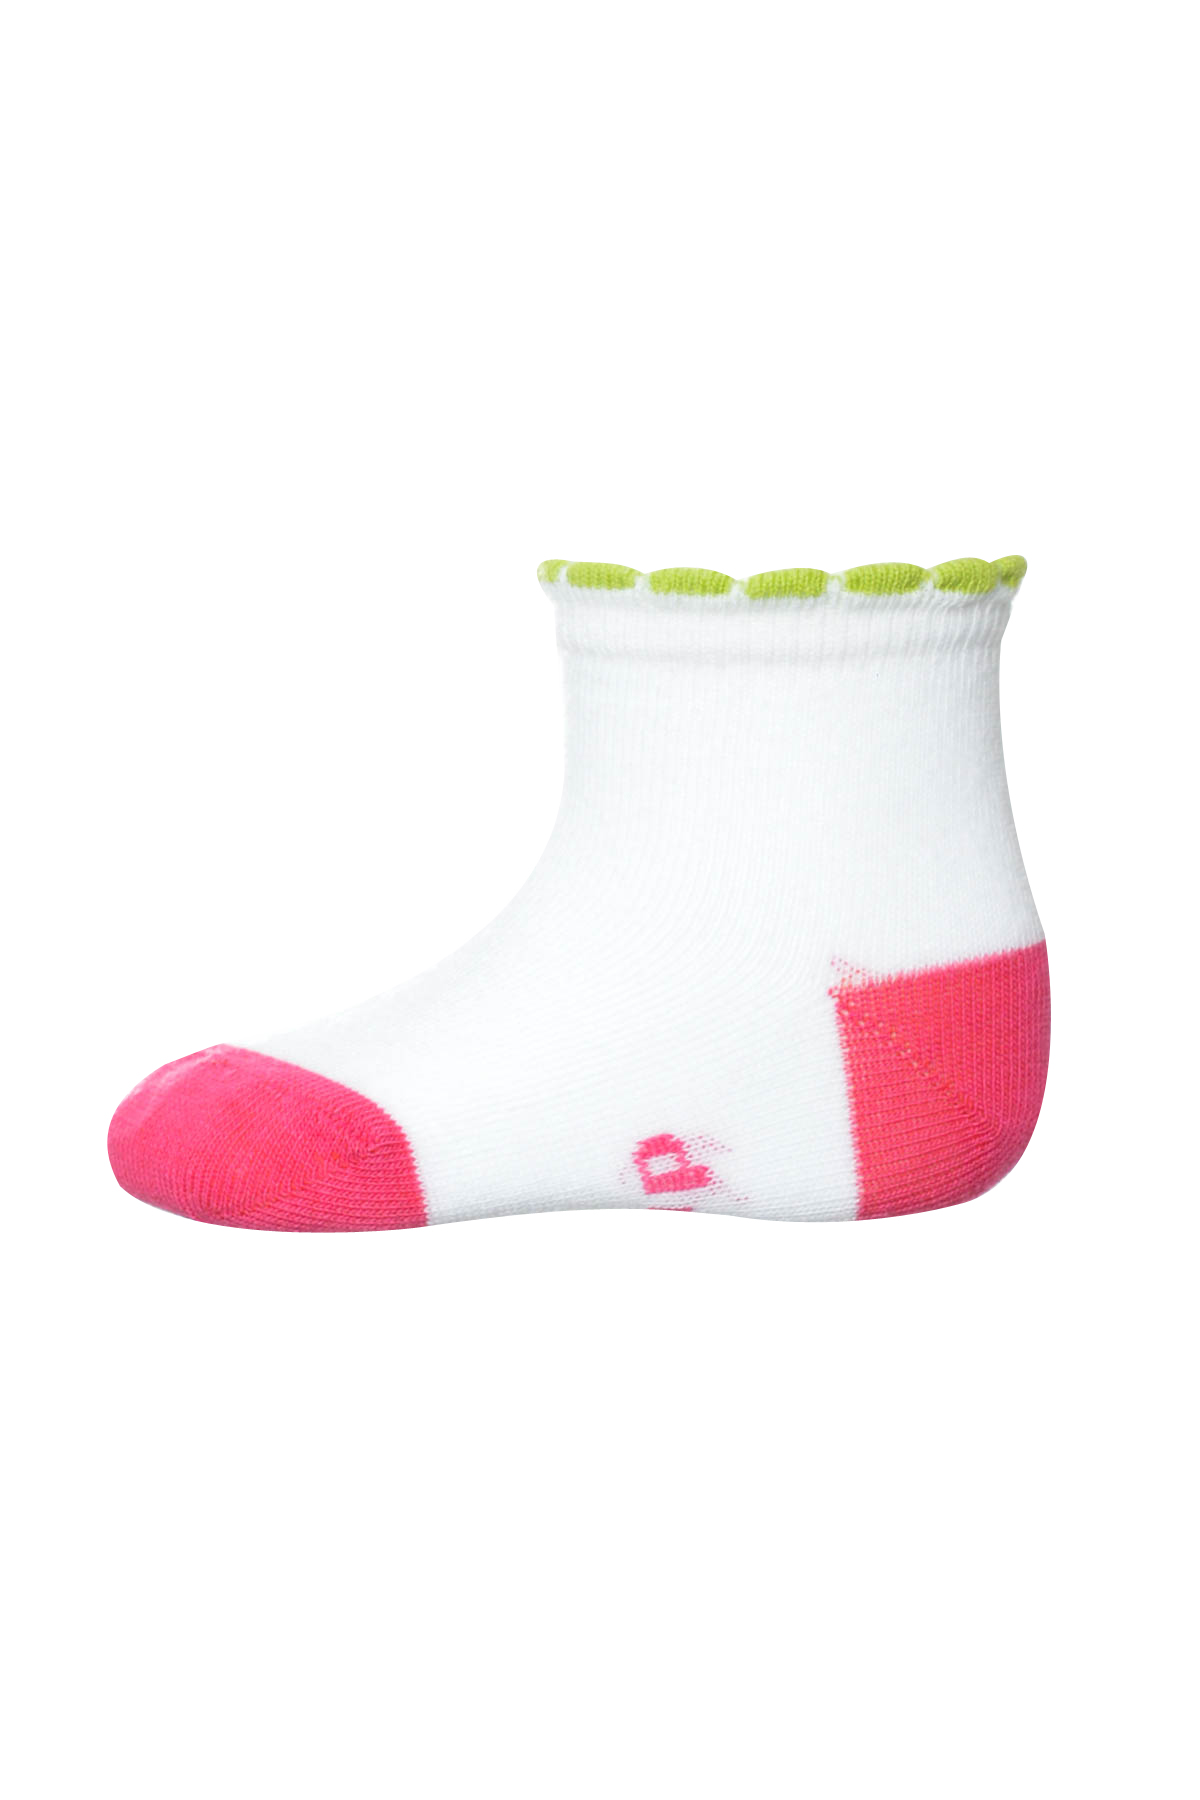 Kids' Socks - Tup tup - 0